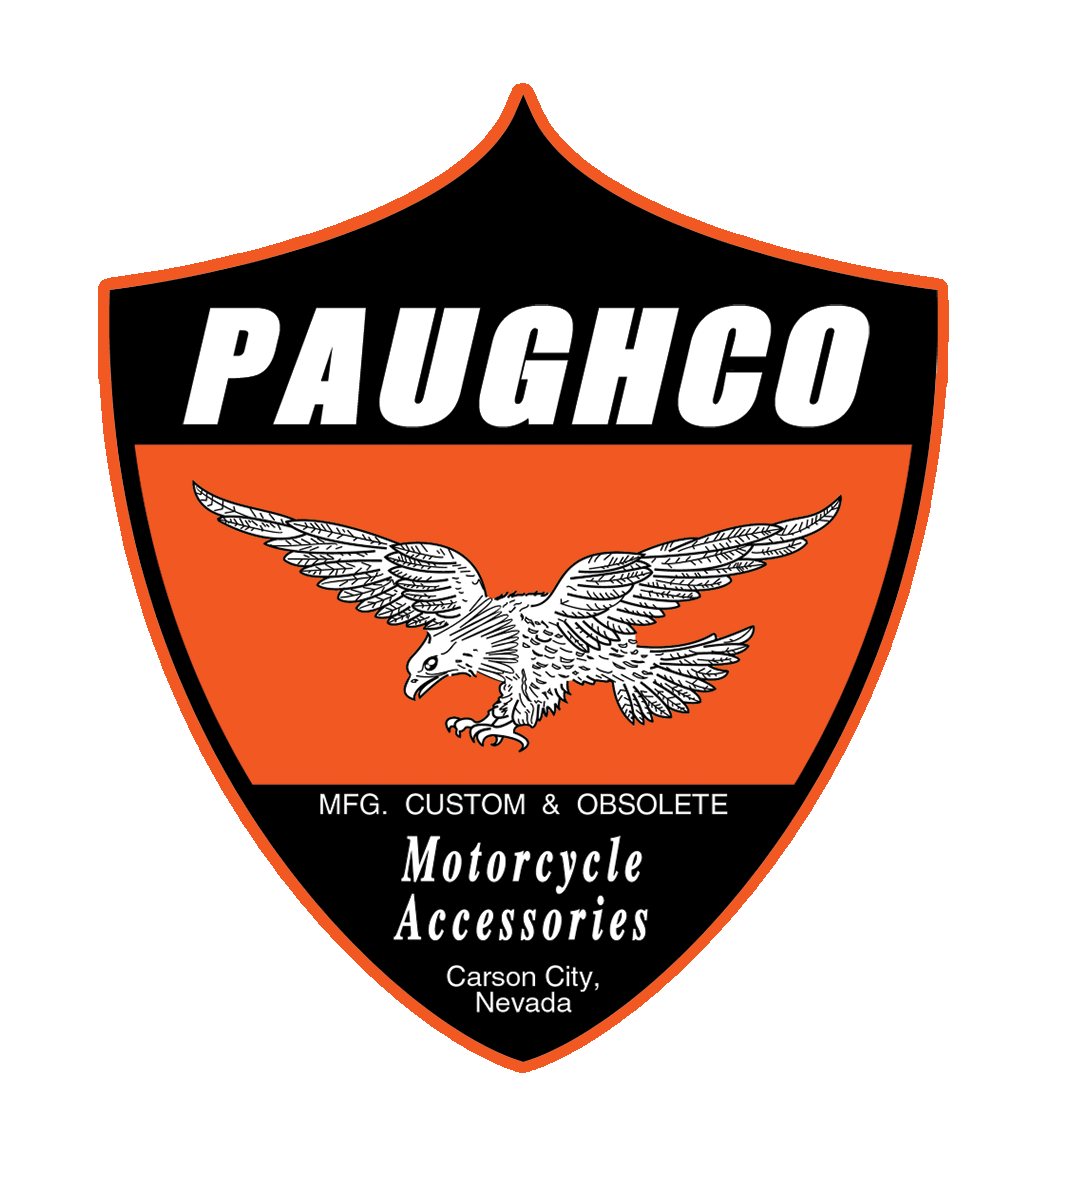 www.paughco.com